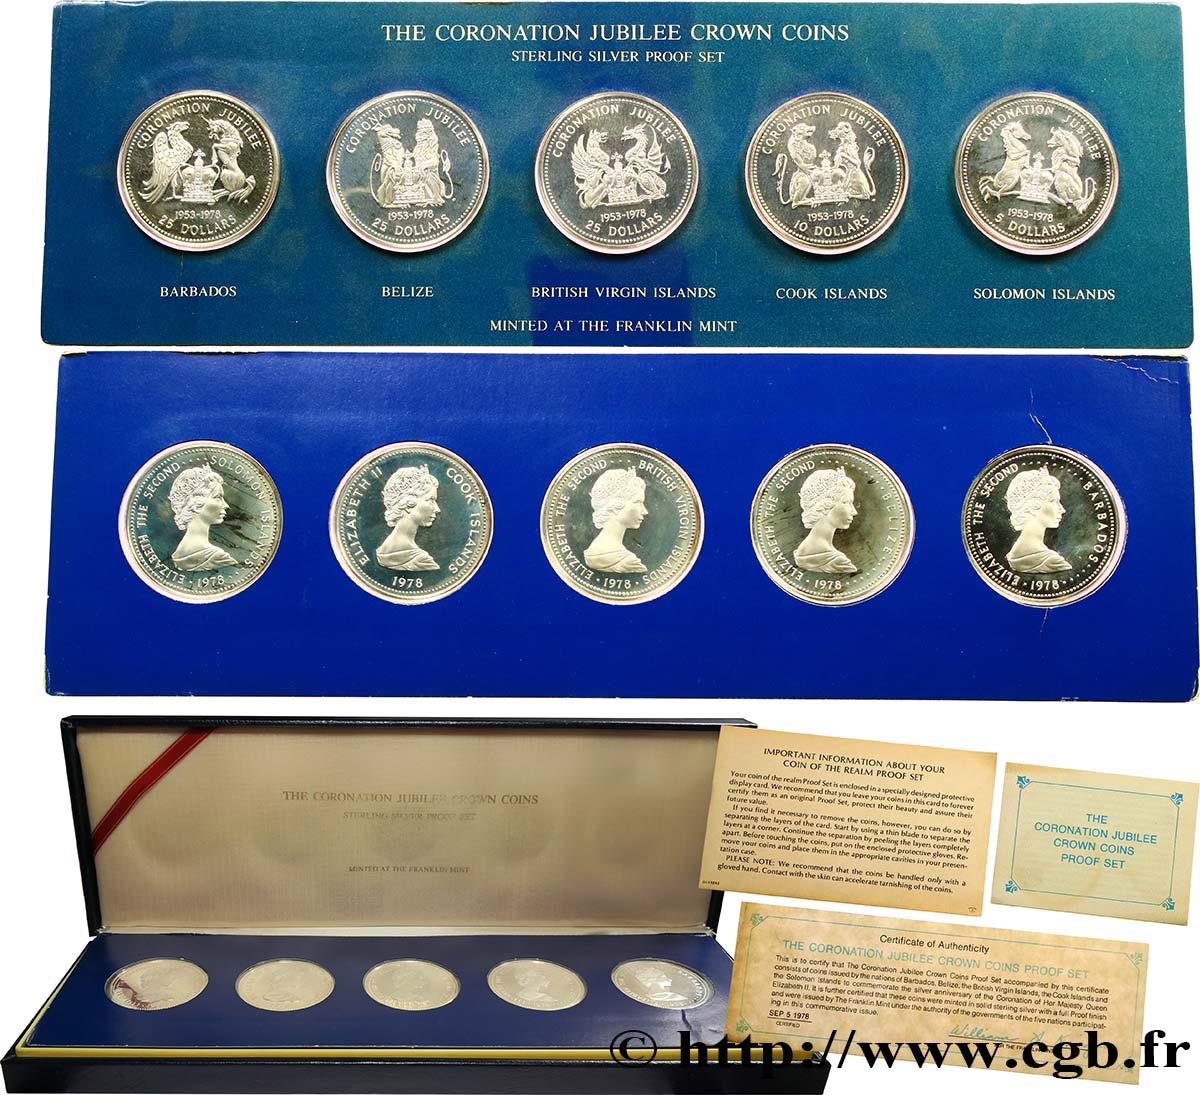 COMMONWEALTH OF NATIONS Coin set Proof 25e anniversaire du couronnement d’Elizabeth II 1978 Atelier Divers ST 